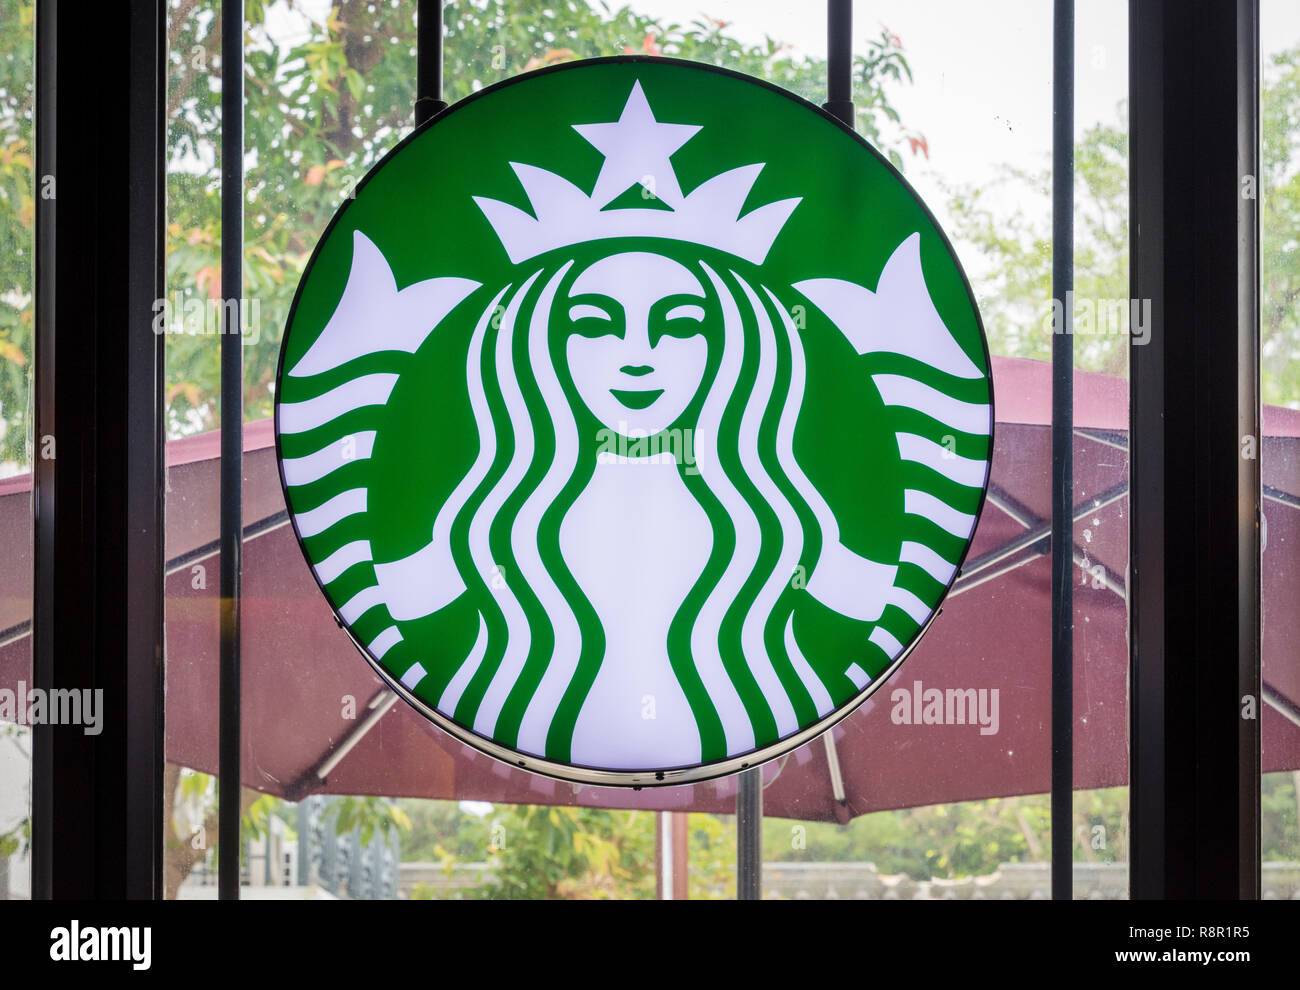 Symbole de Starbucks dans une fenêtre d'un café Starbucks à Hong Kong, Chine Banque D'Images